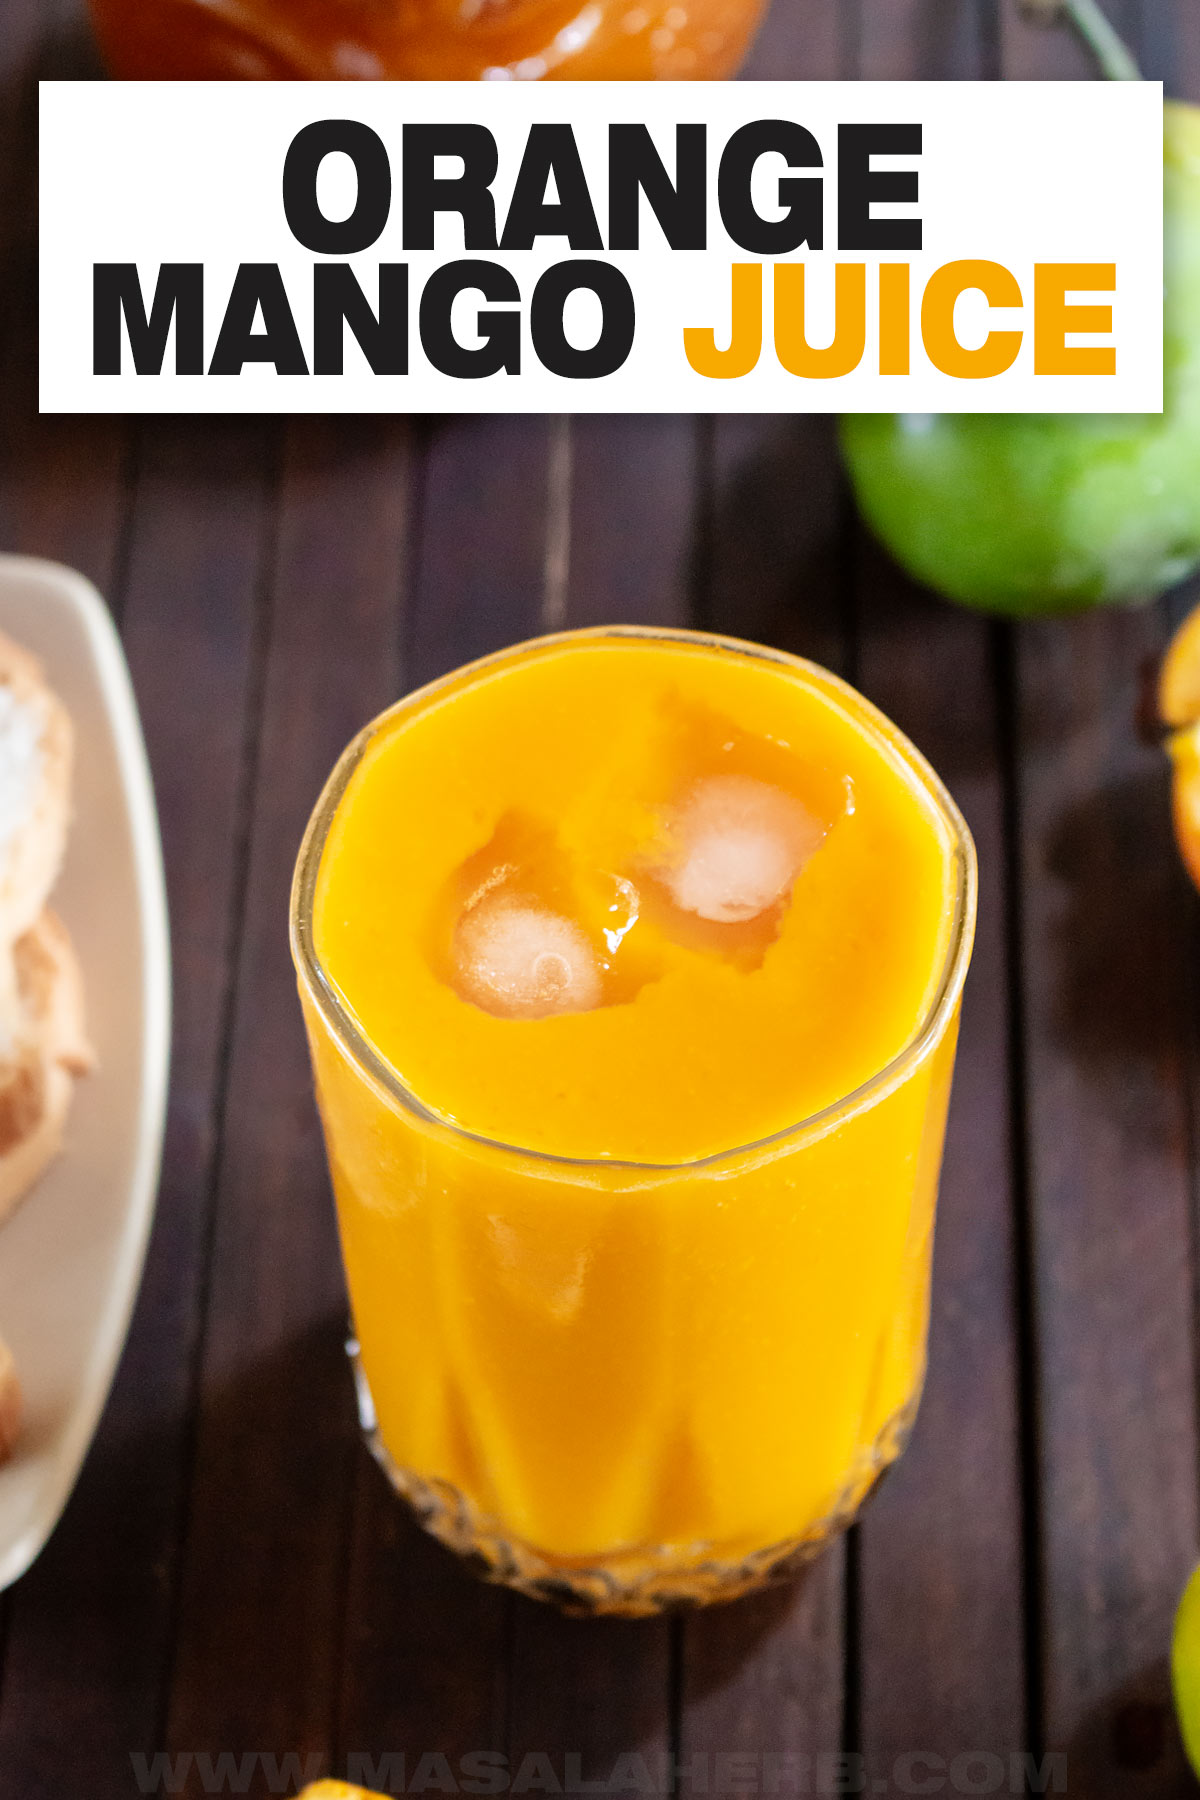 Orange Mango Juice with Fresh Fruits cover image